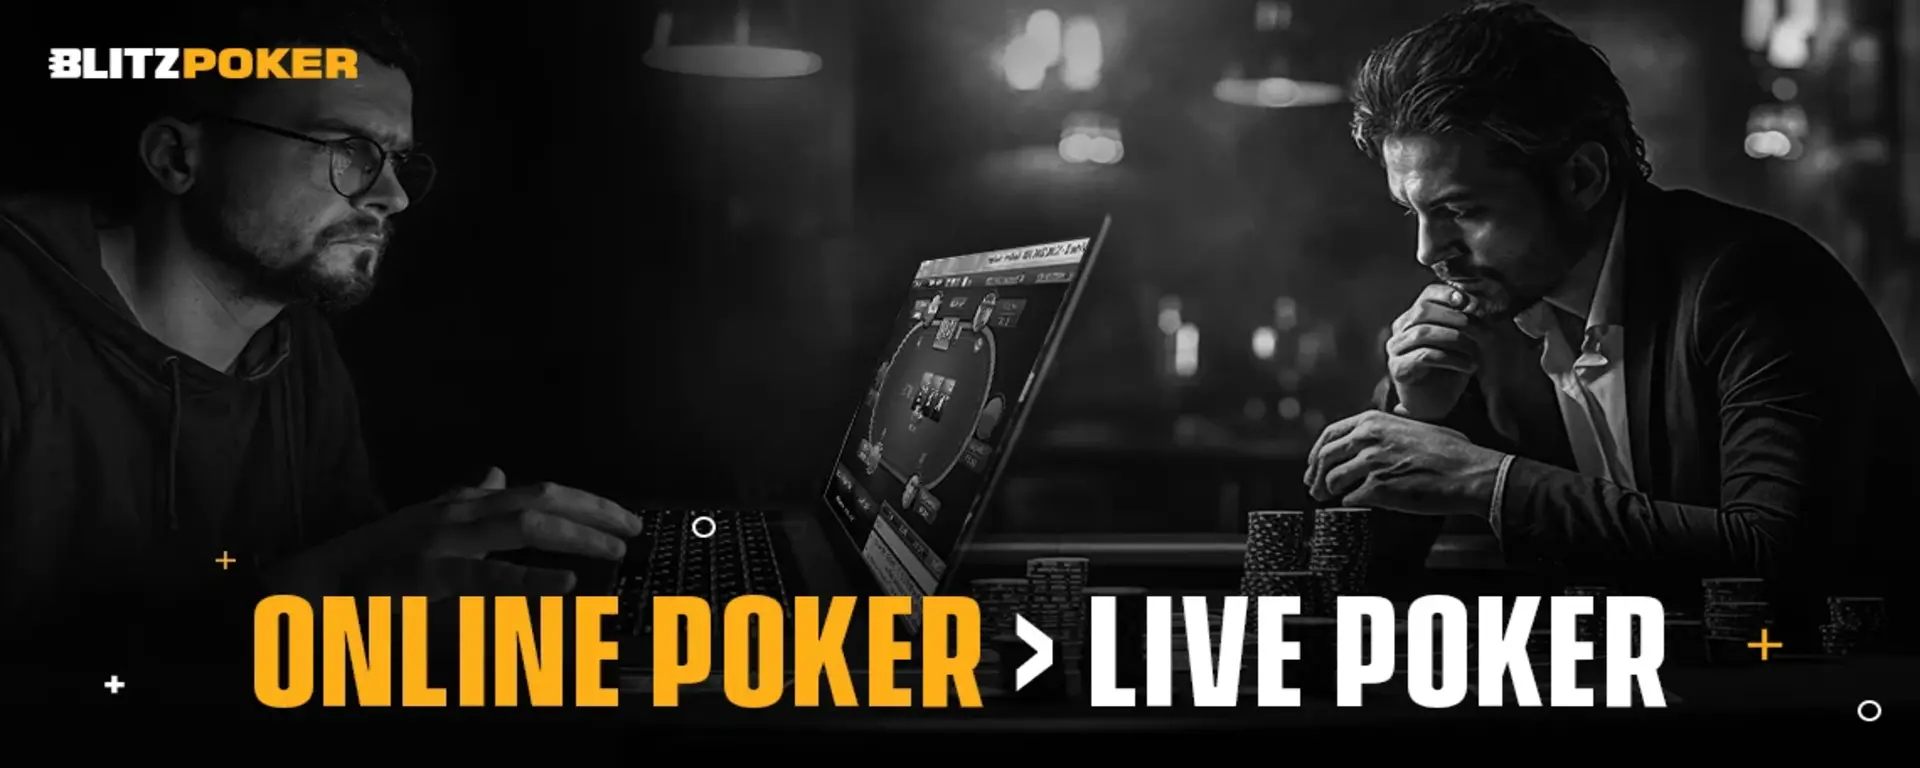 Online Poker Is Better than Live Poker